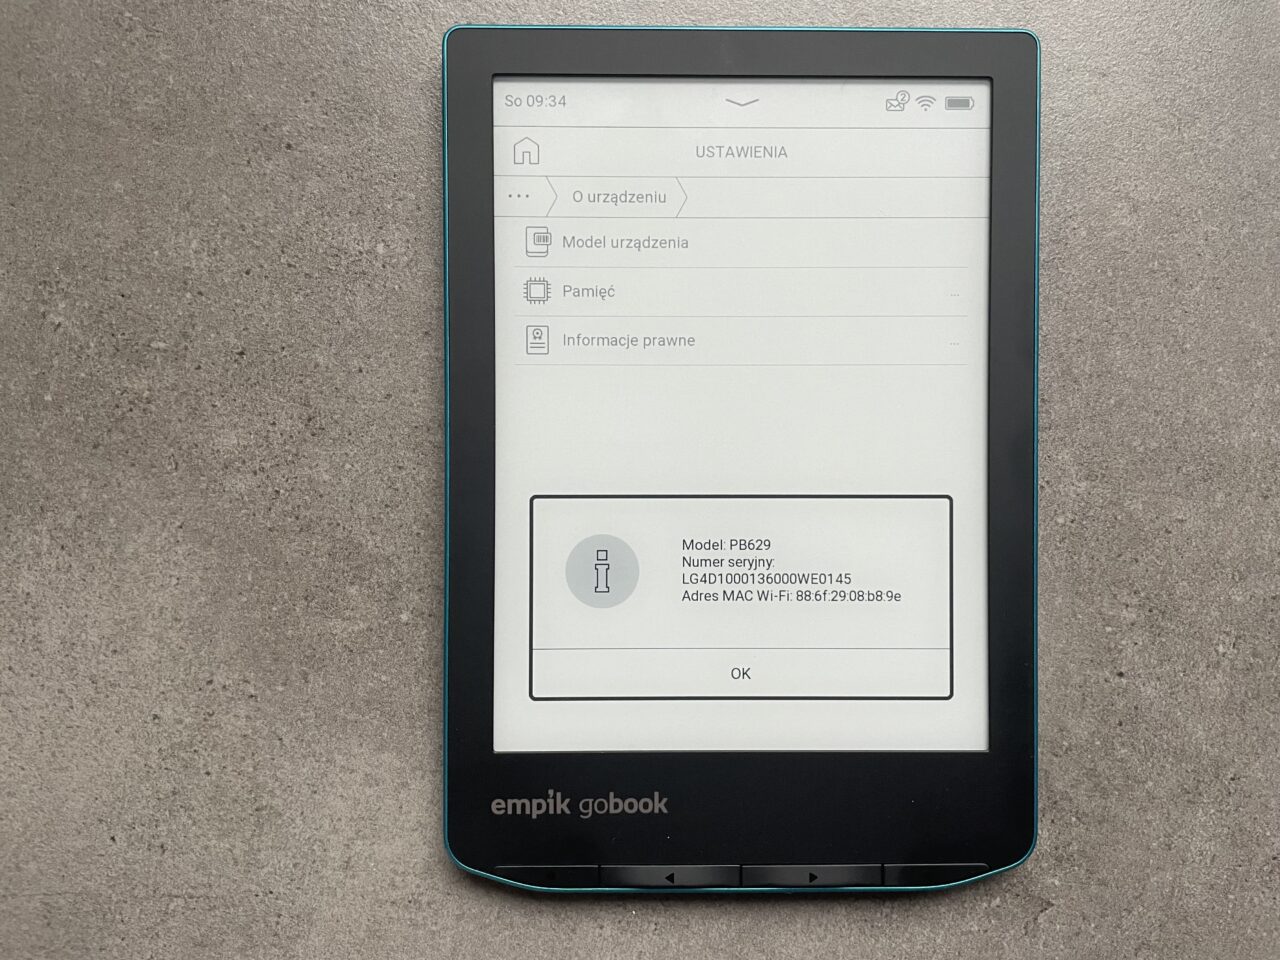 Czytnik ebooków leżący na szarym blacie z wyświetlonym menu ustawień i informacjami o urządzeniu na ekranie.